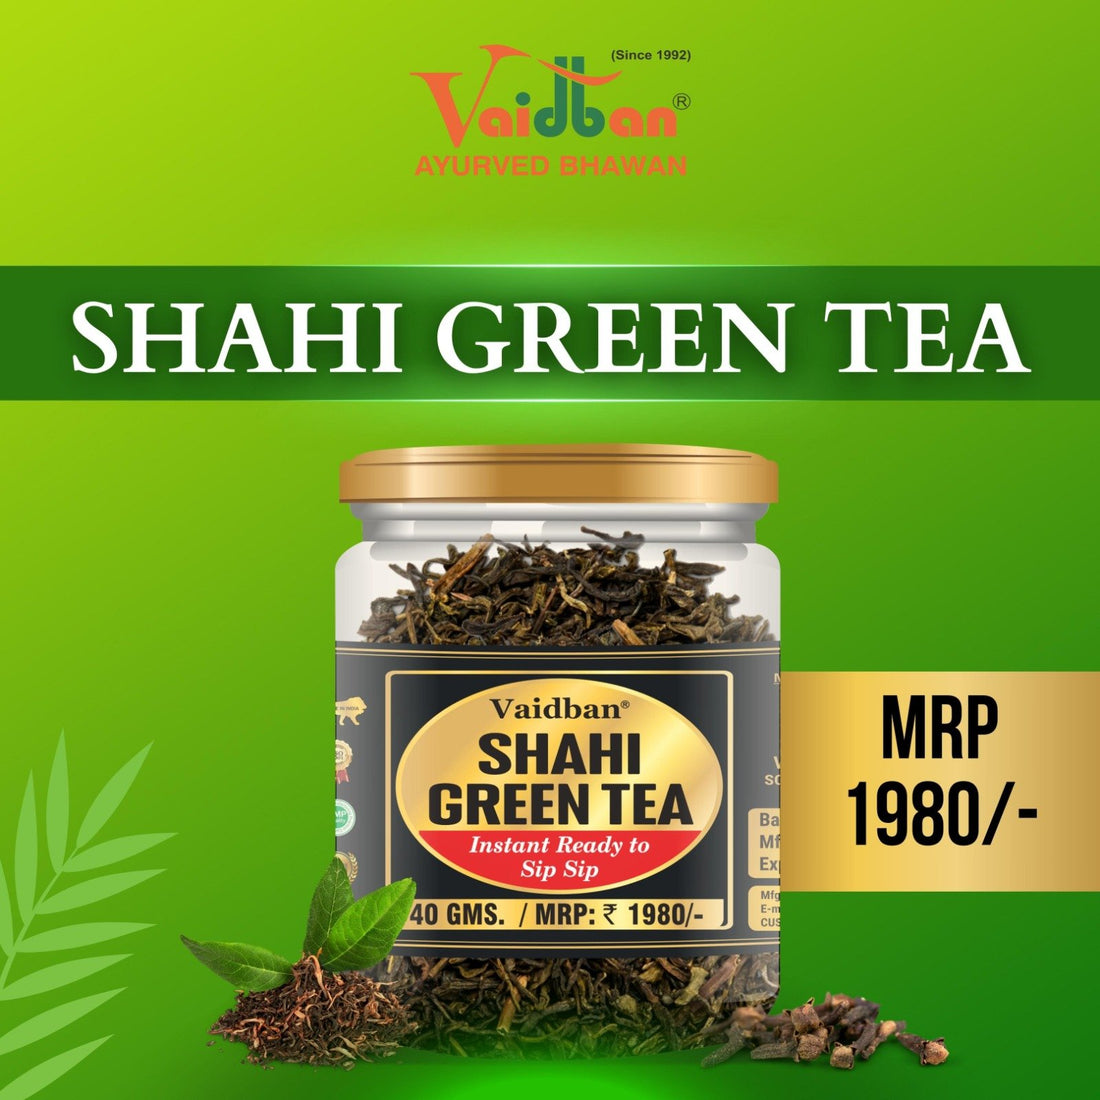 Vaidban Shahi Green Tea